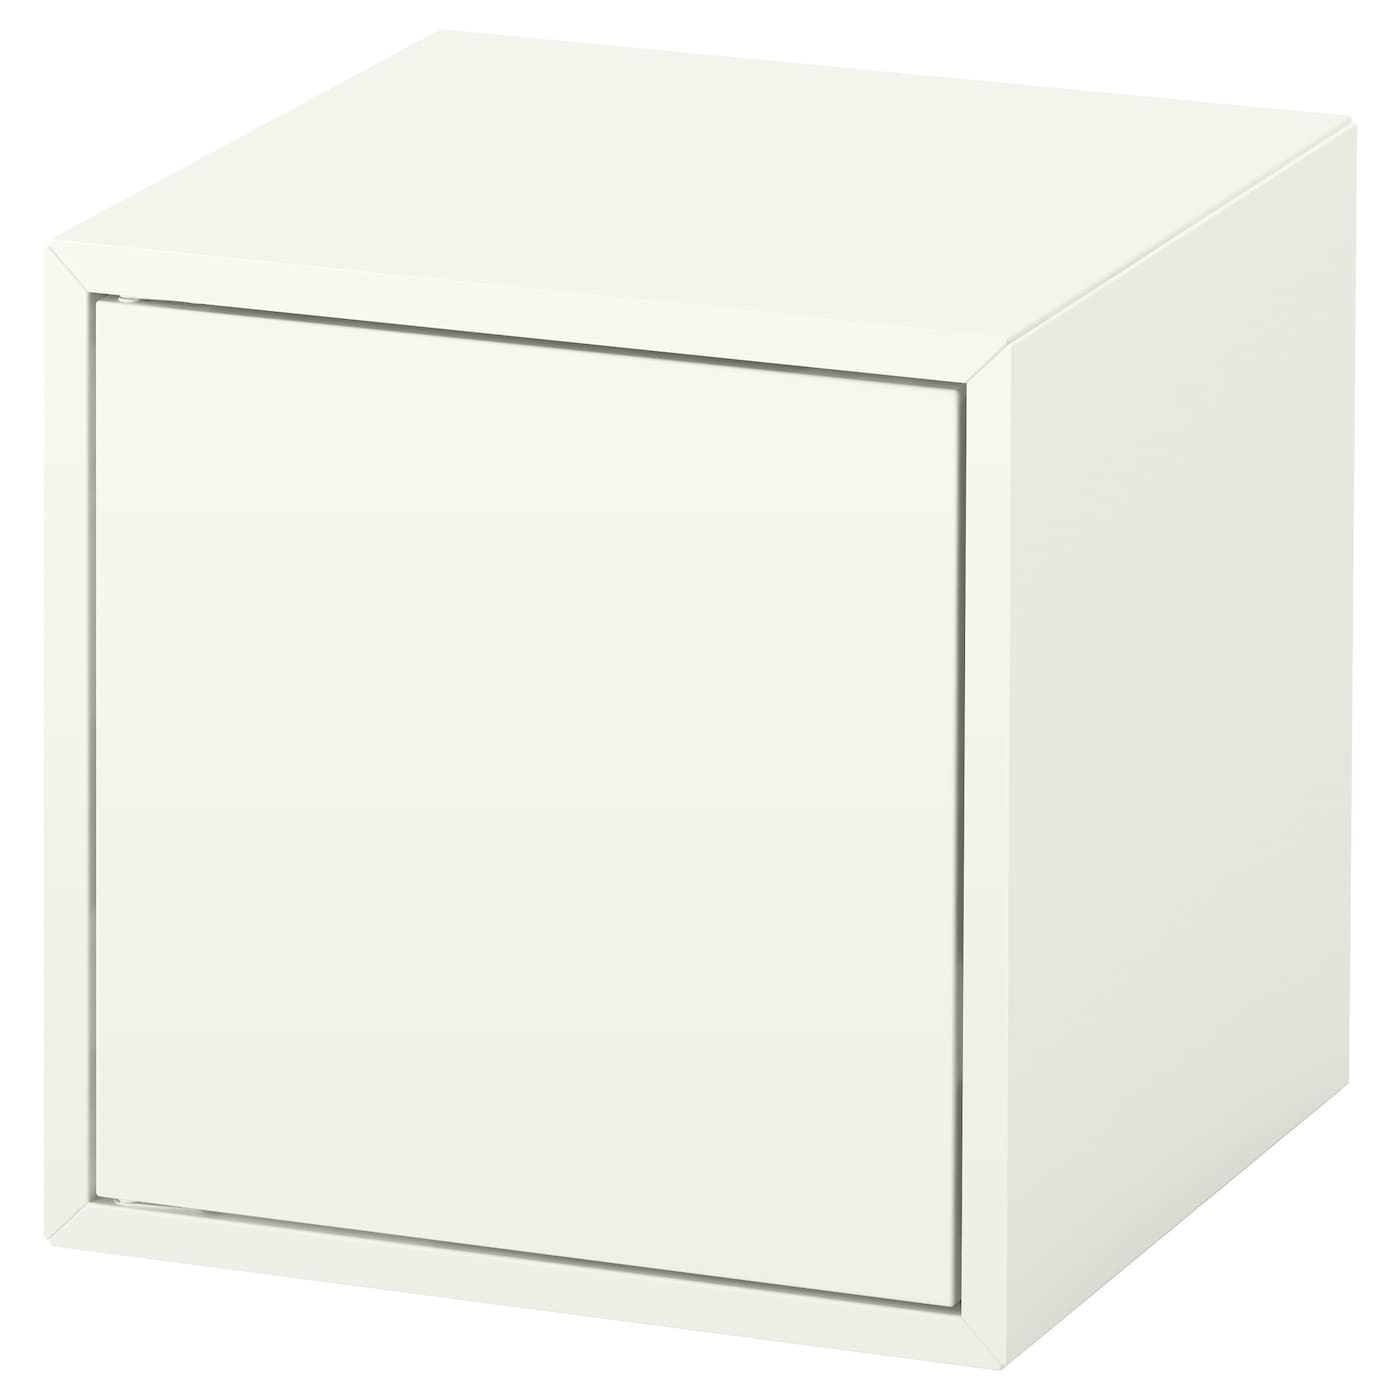 Настенный стеллаж - IKEA EKET, 35x35x35 см, белый, ЭКЕТ ИКЕА